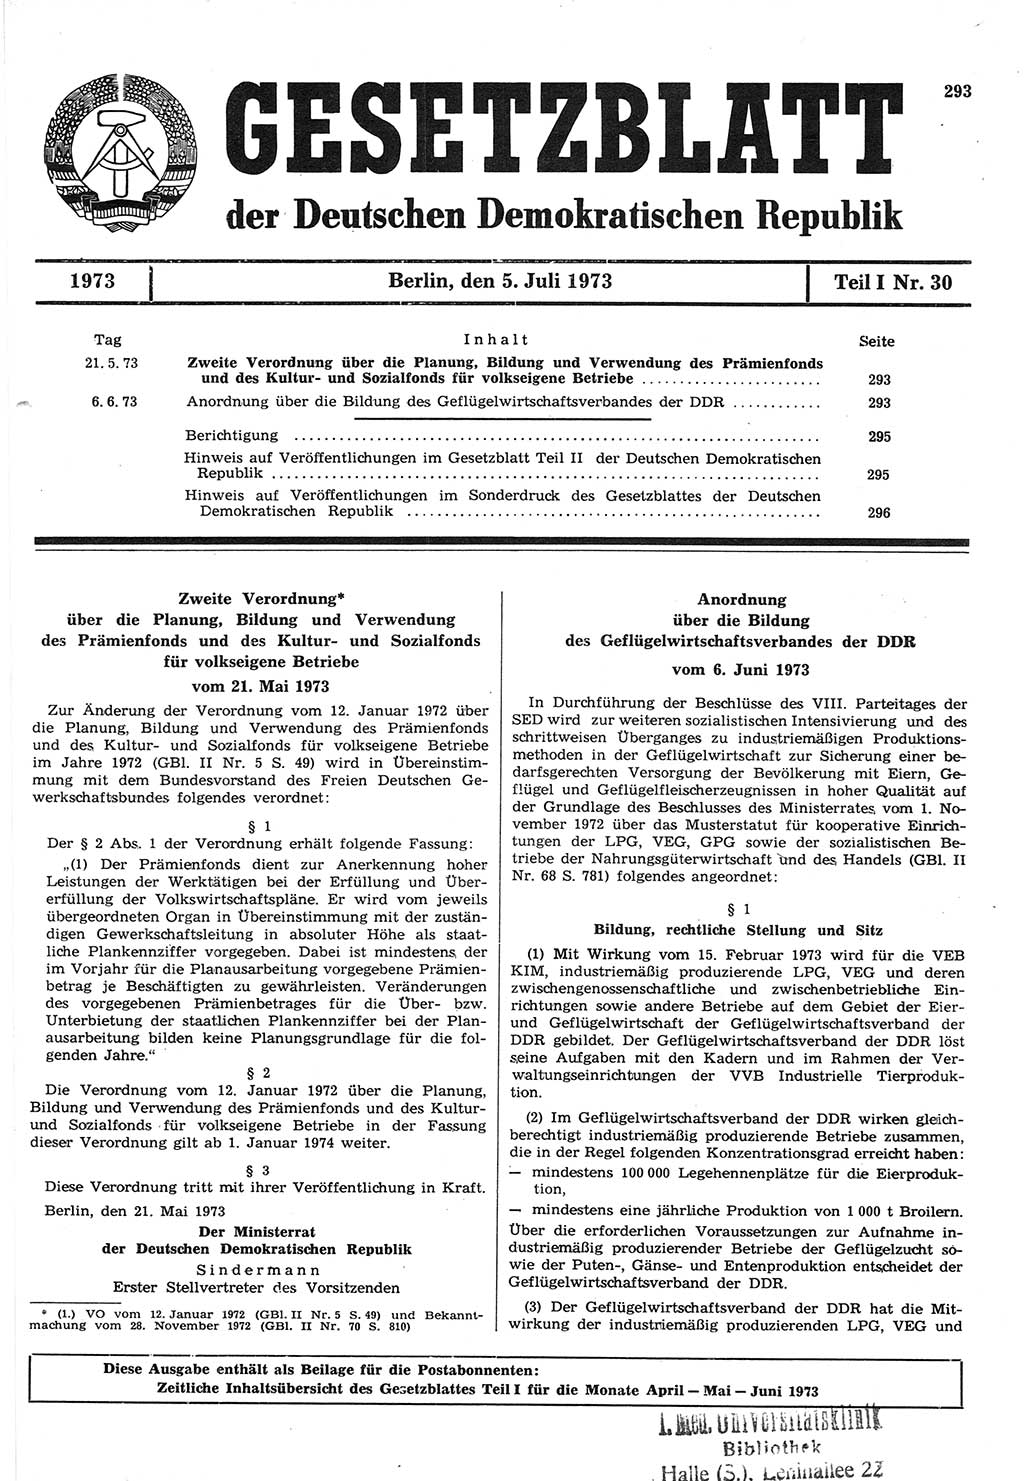 Gesetzblatt (GBl.) der Deutschen Demokratischen Republik (DDR) Teil Ⅰ 1973, Seite 293 (GBl. DDR Ⅰ 1973, S. 293)